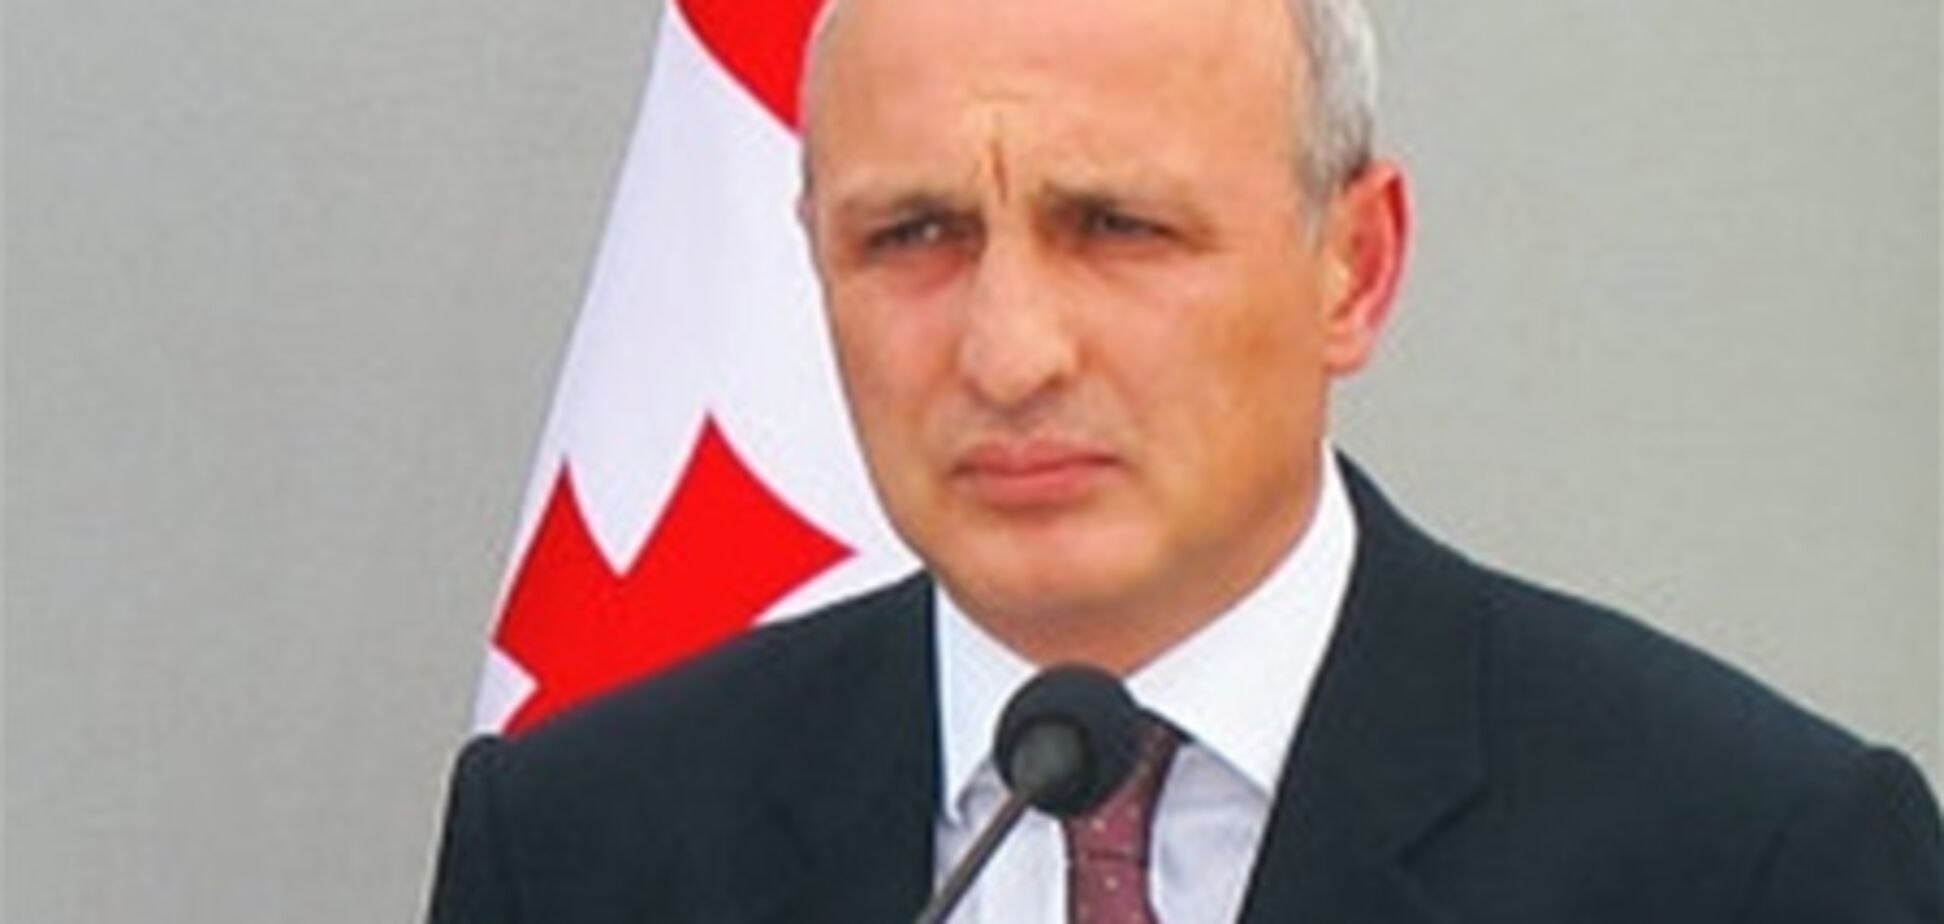 Экс-премьер Грузии скрыл детали убийства, чтобы прикрыть жену